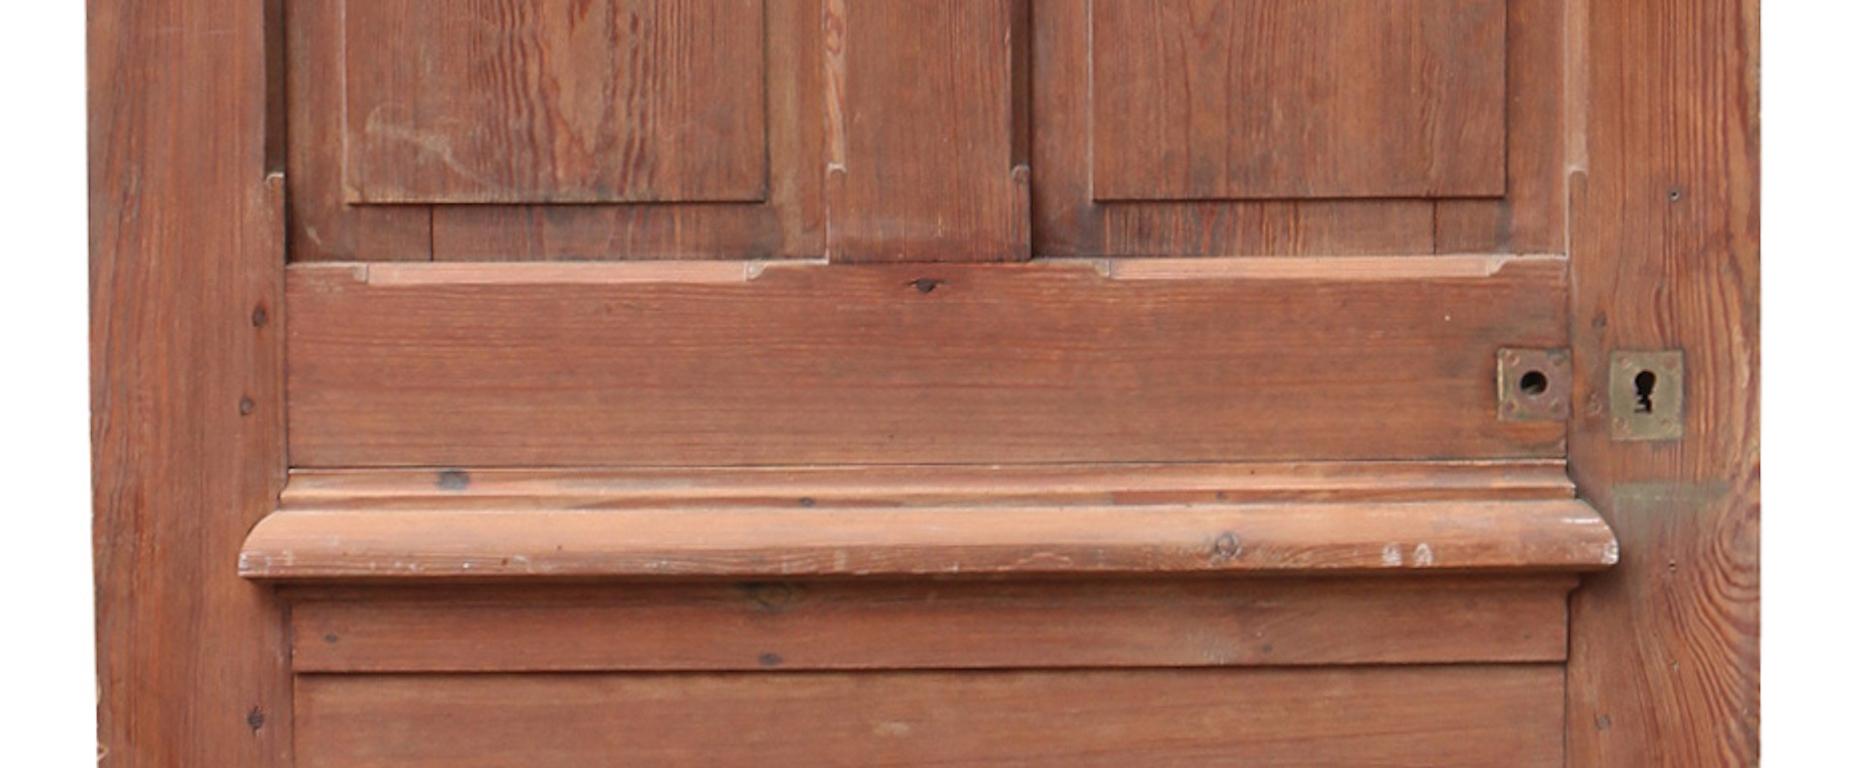 8 panel wood door